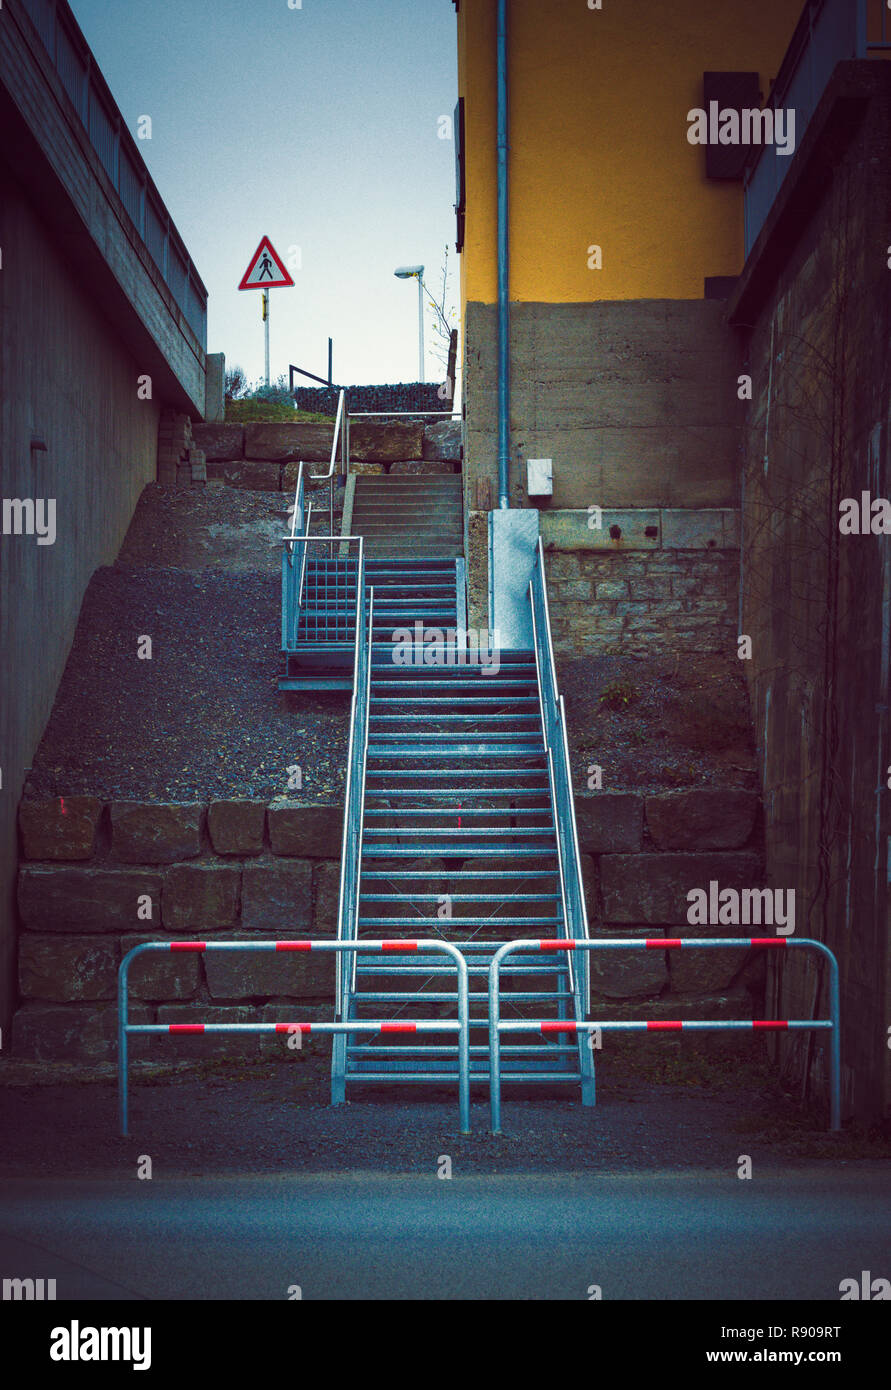 Escaliers trottoirs pour piétons Banque D'Images